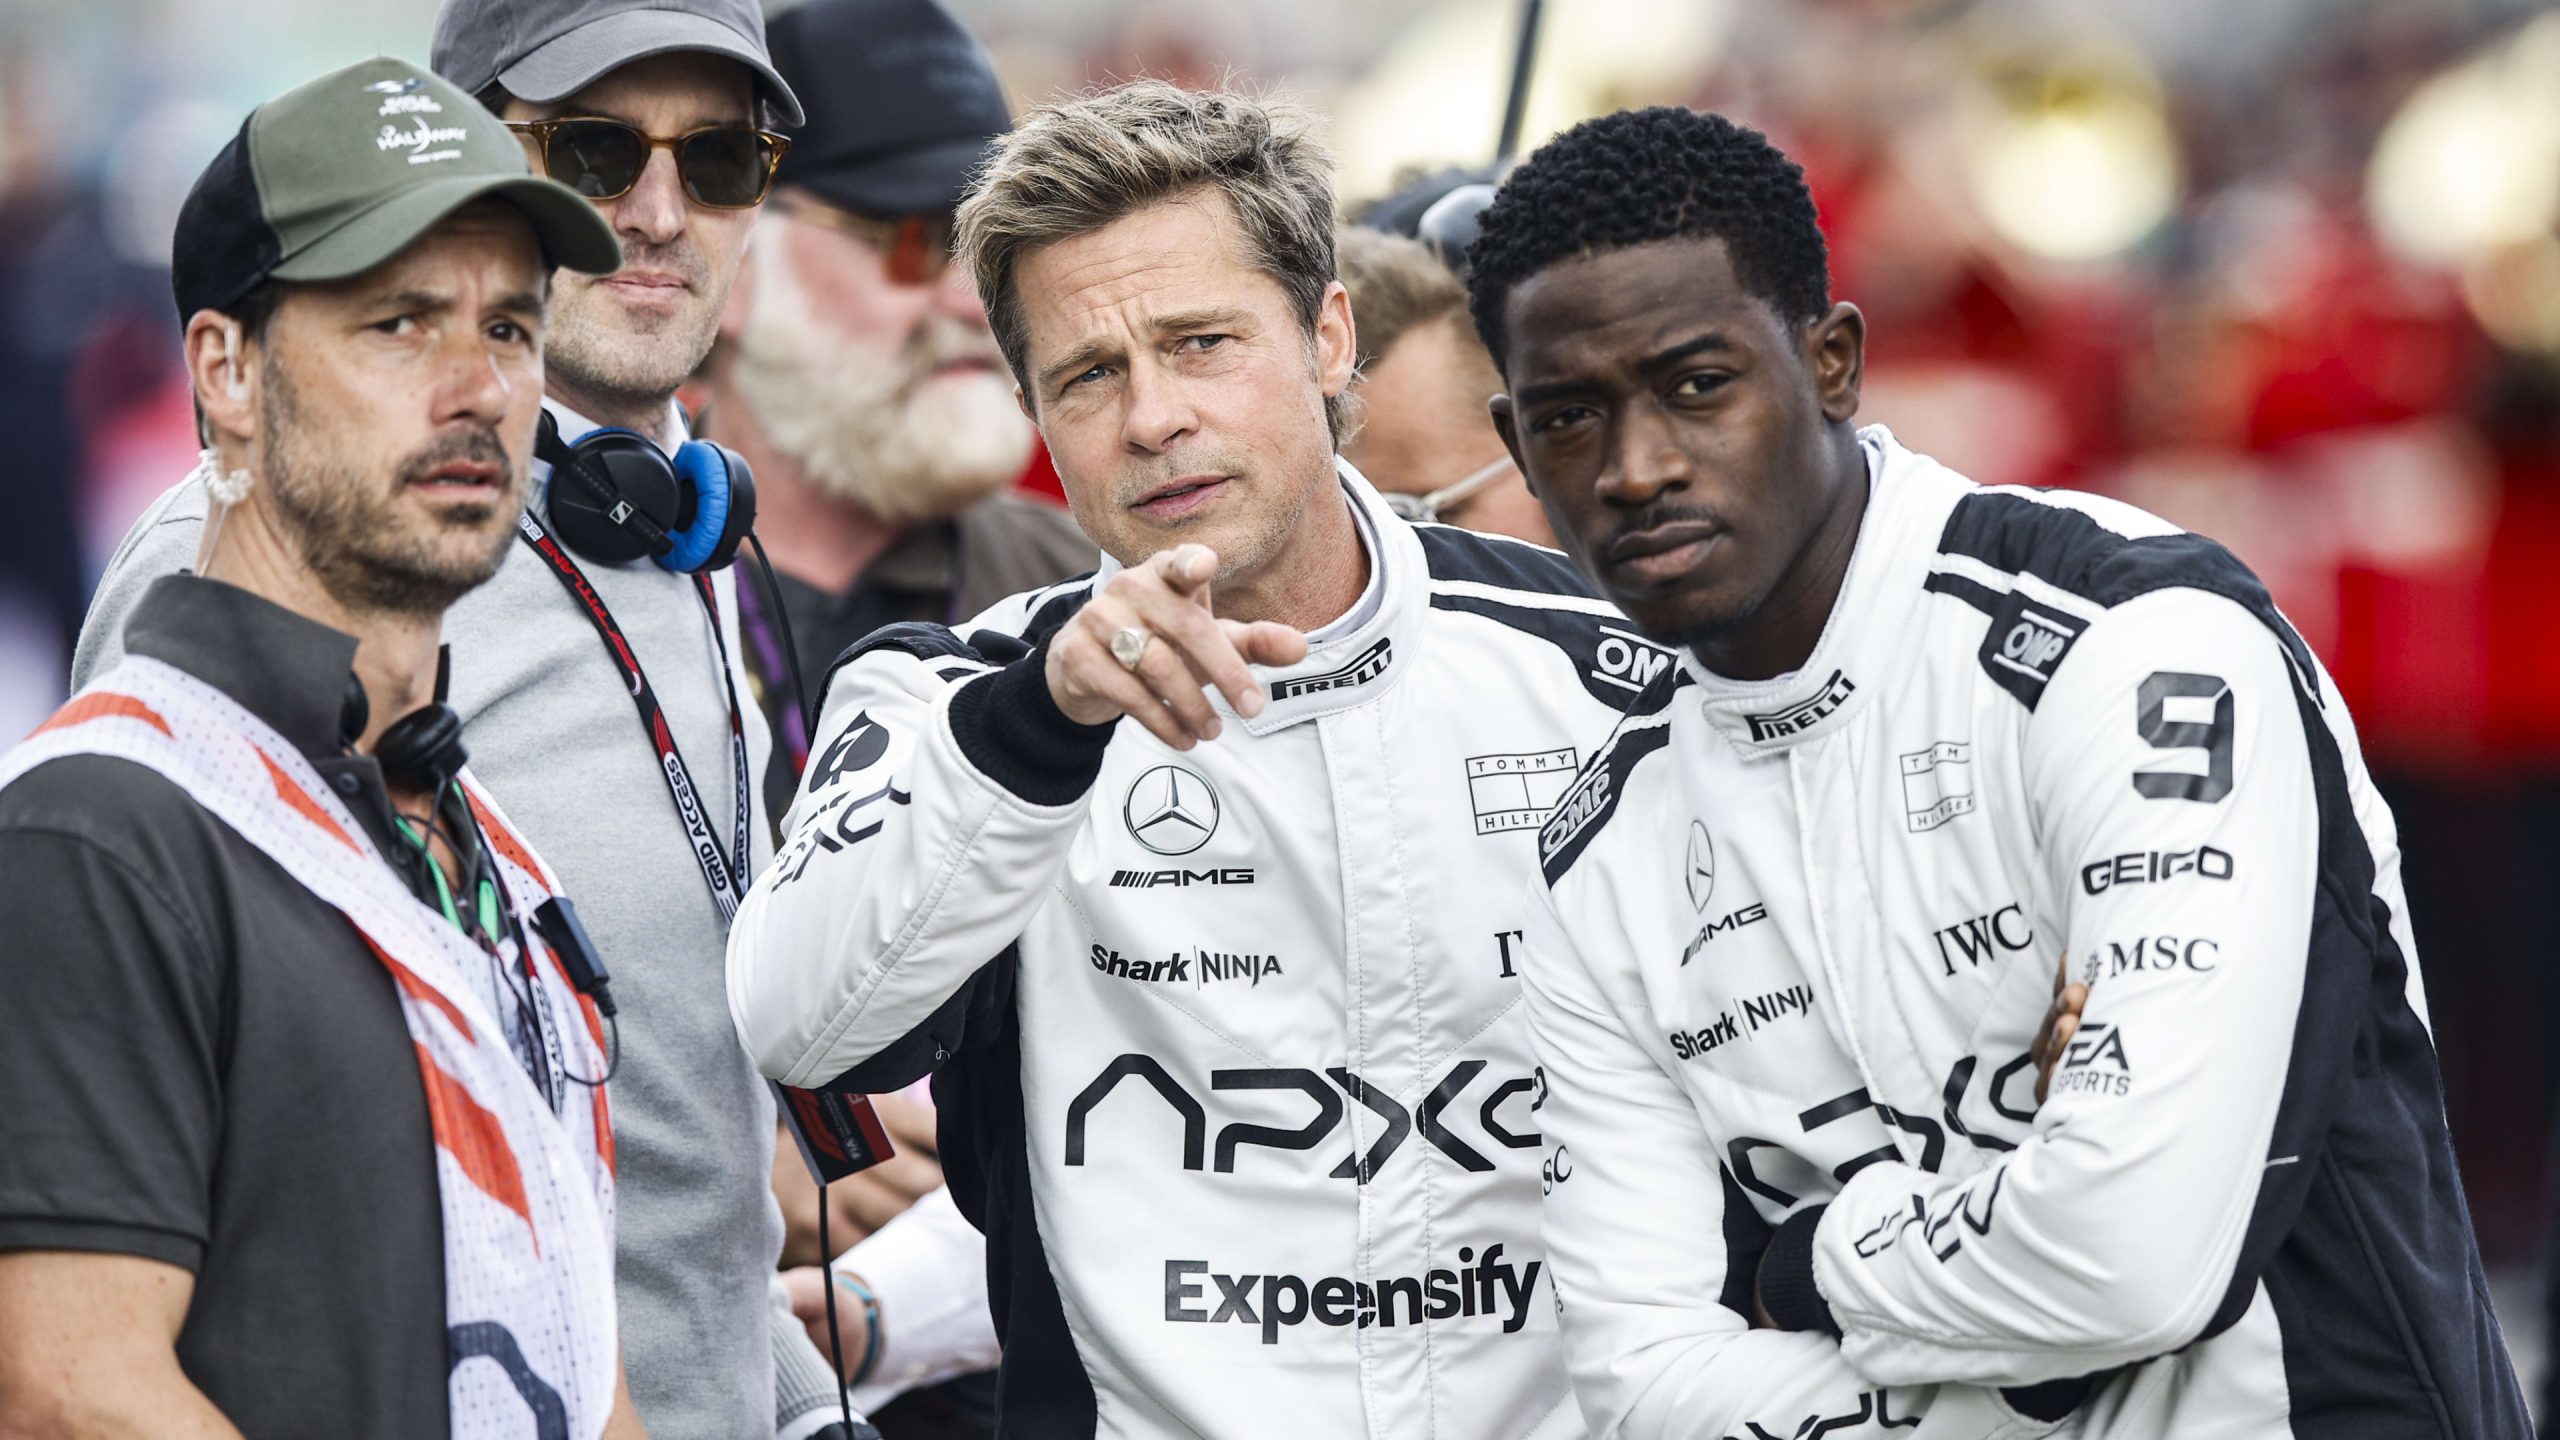 “Estos pilotos lo llevan al límite”: el productor Jerry Bruckheimer explica por qué estaba tan interesado en hacer una película sobre “F1”
